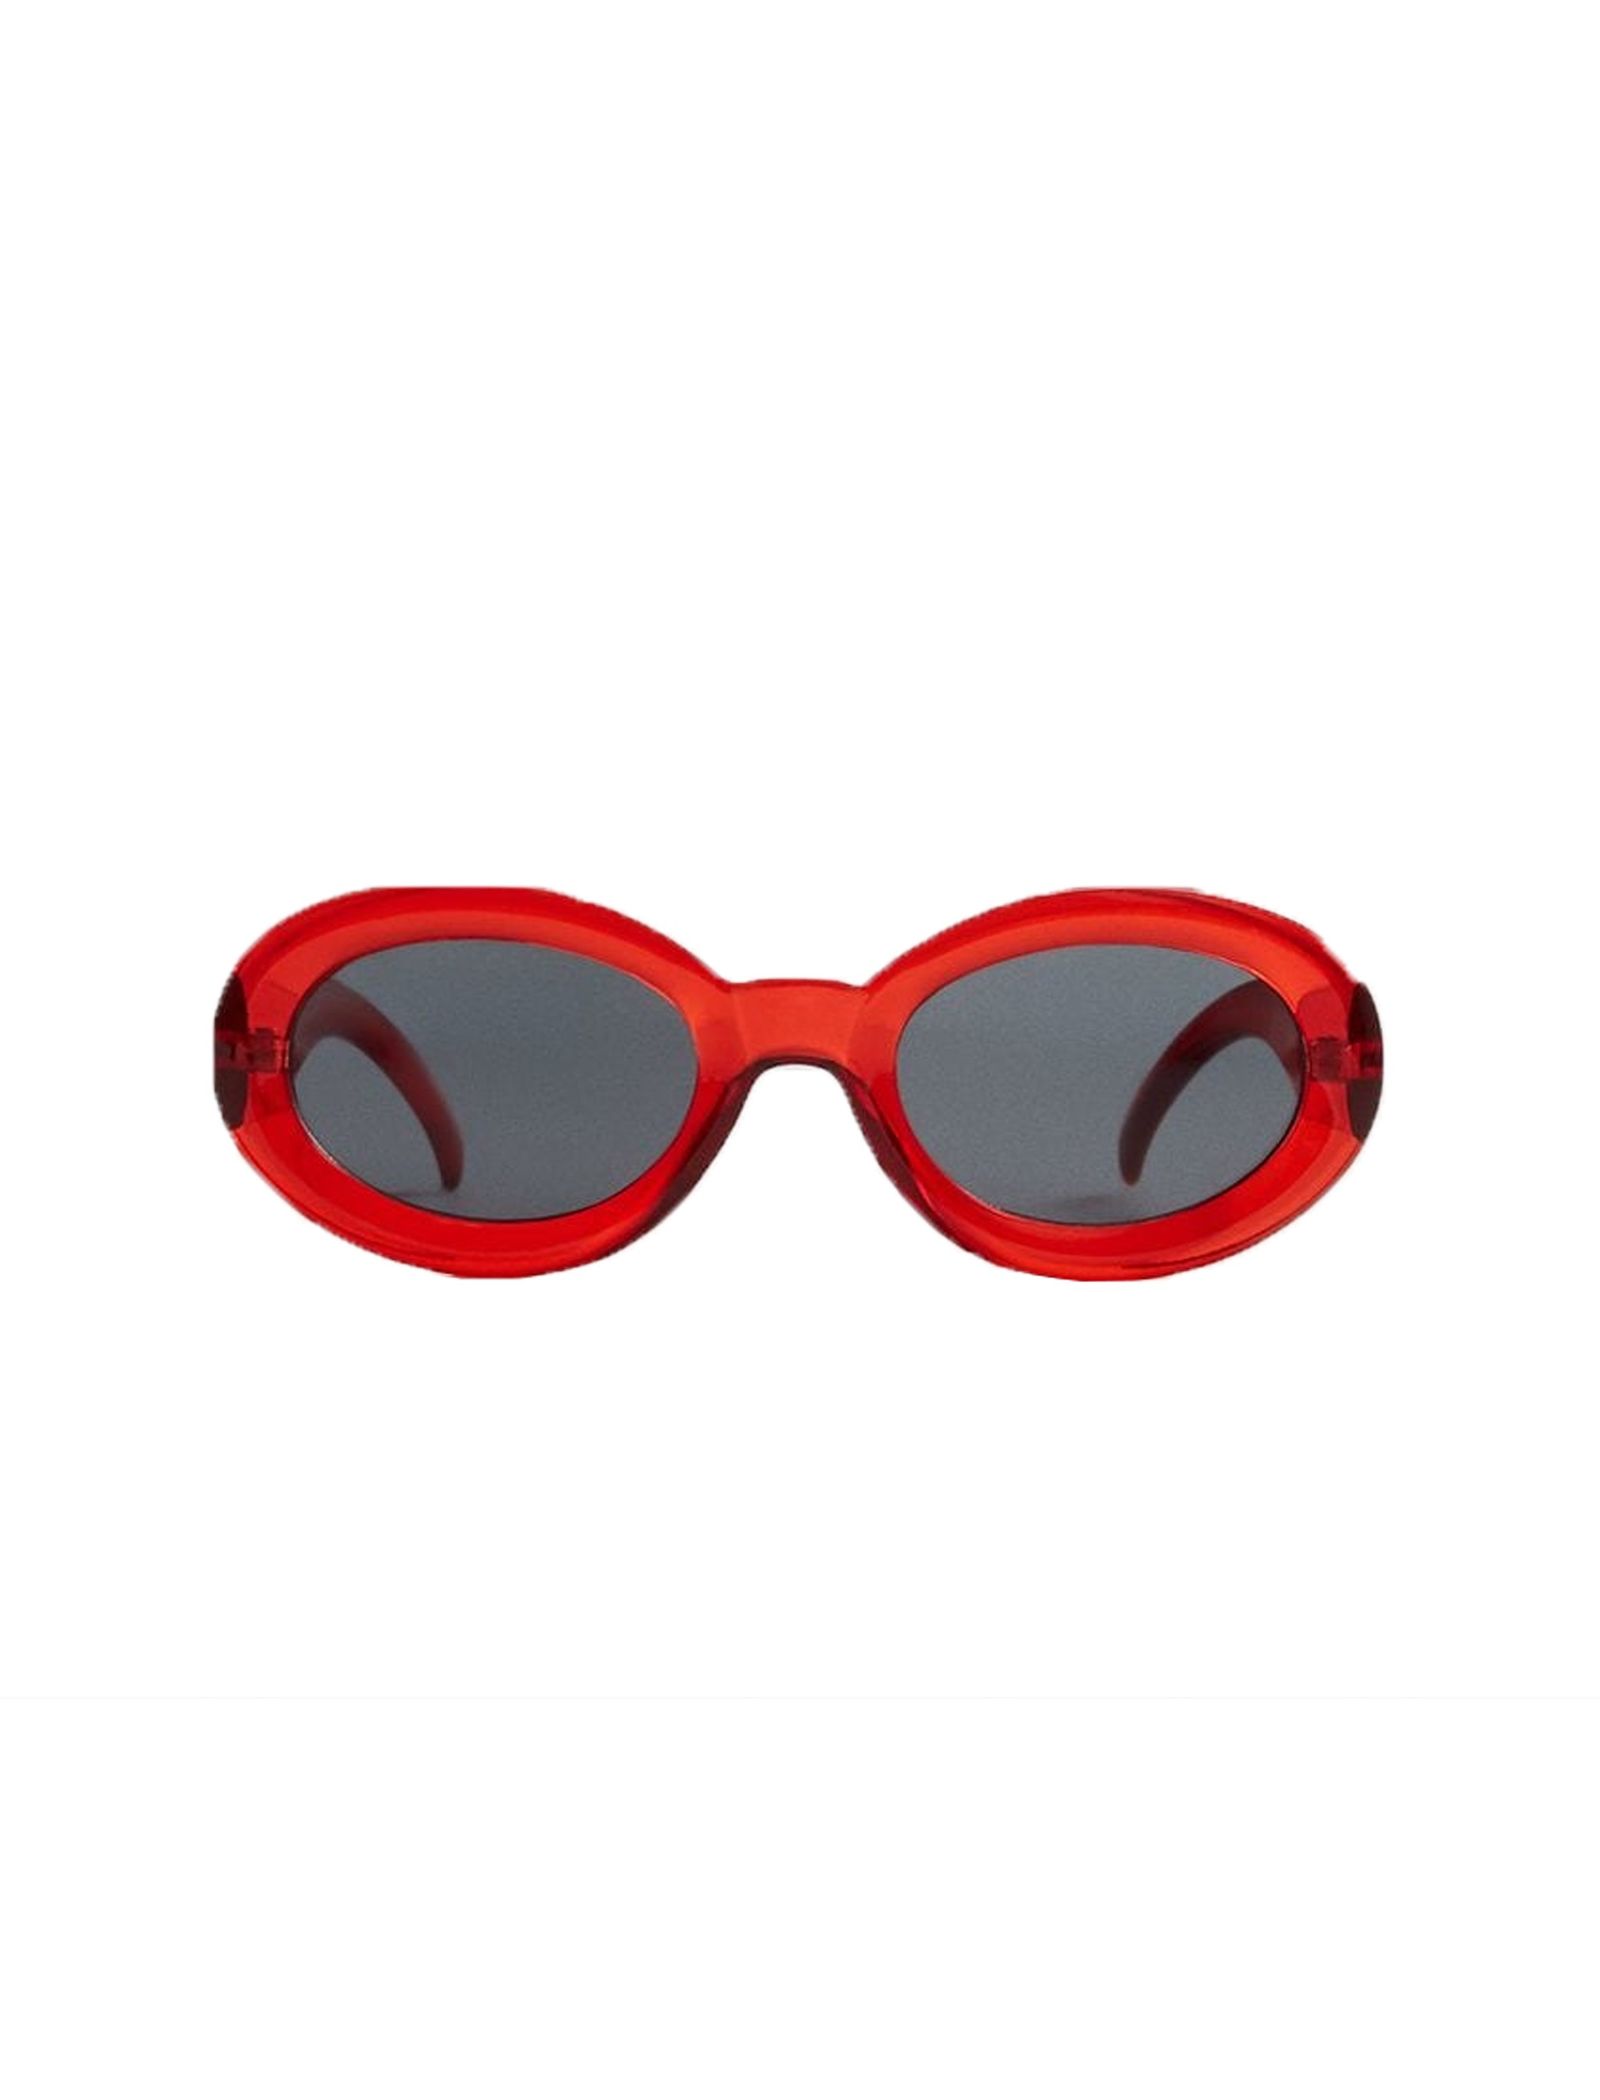 عینک آفتابی بیضی زنانه - مانگو - قرمز - 2